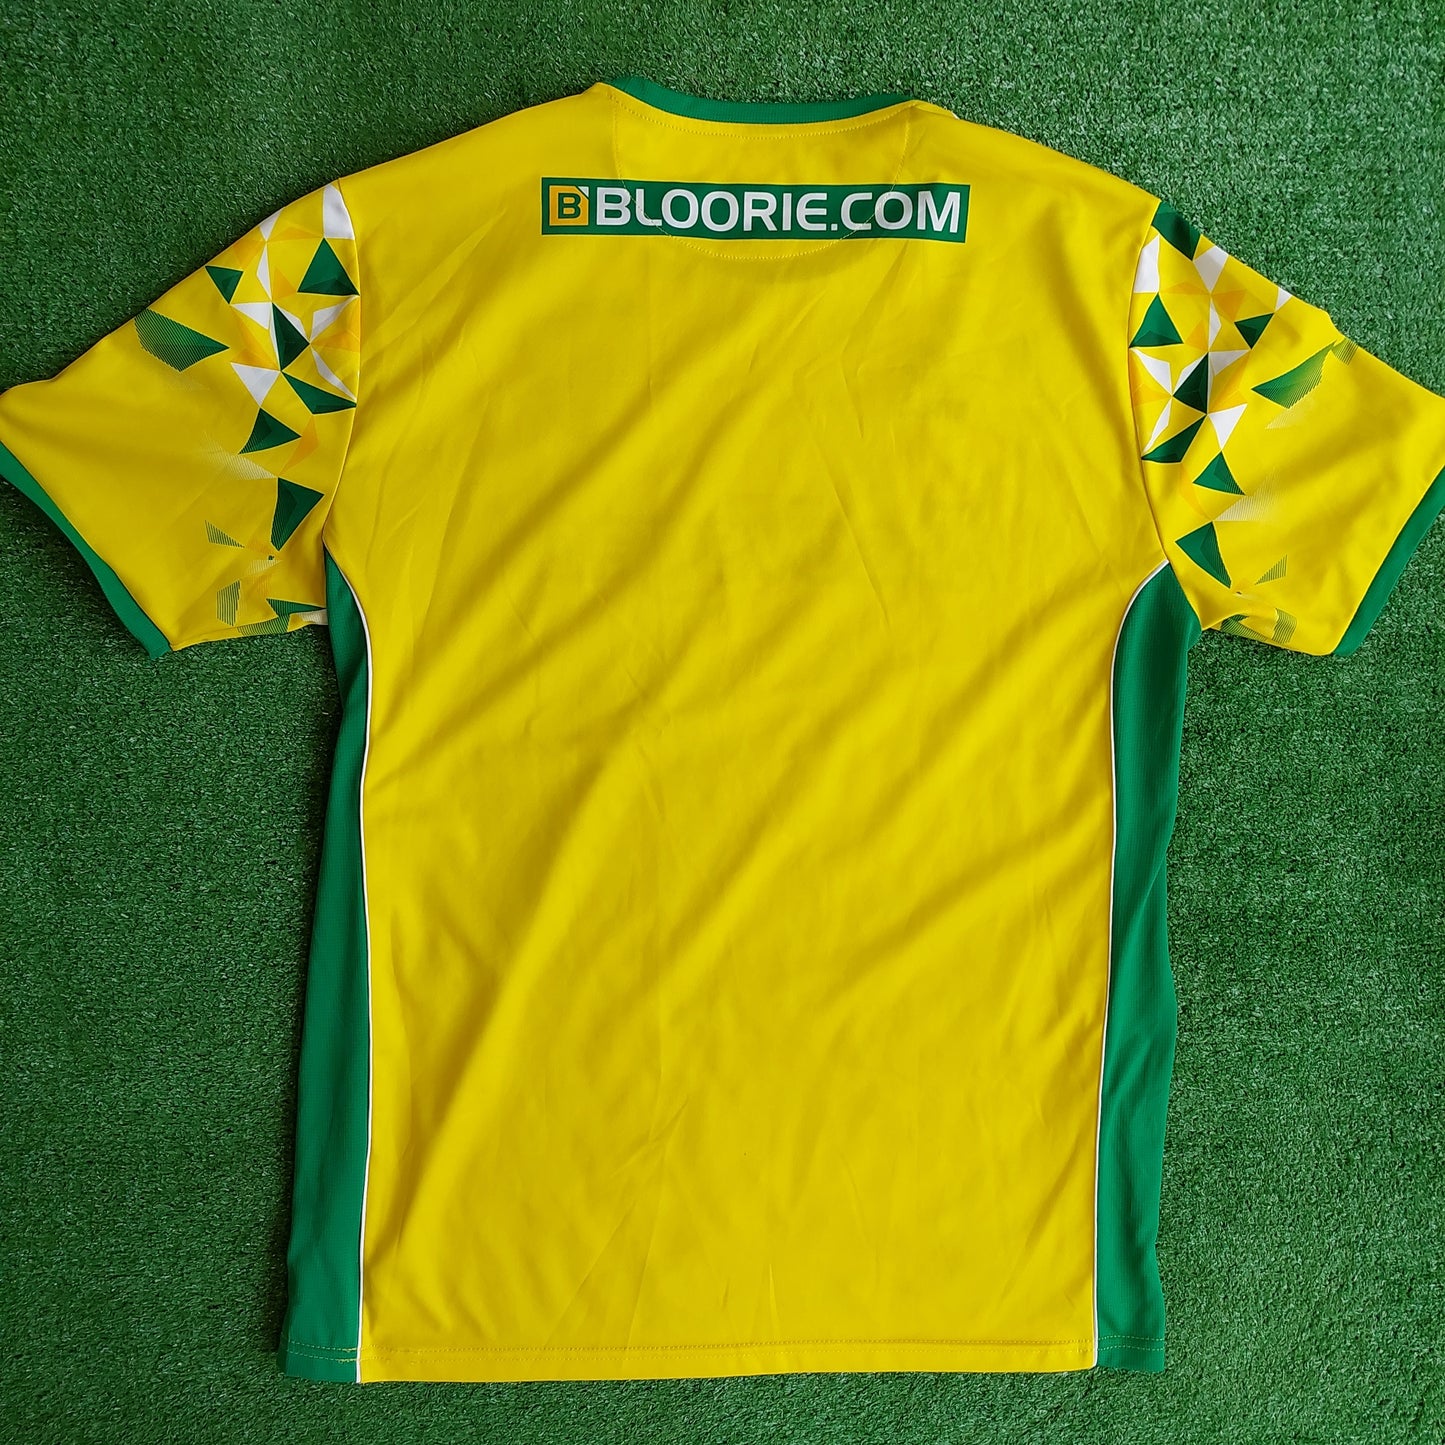 Norwich City 2018/19 Home Shirt (Excellent) - Size 4XL